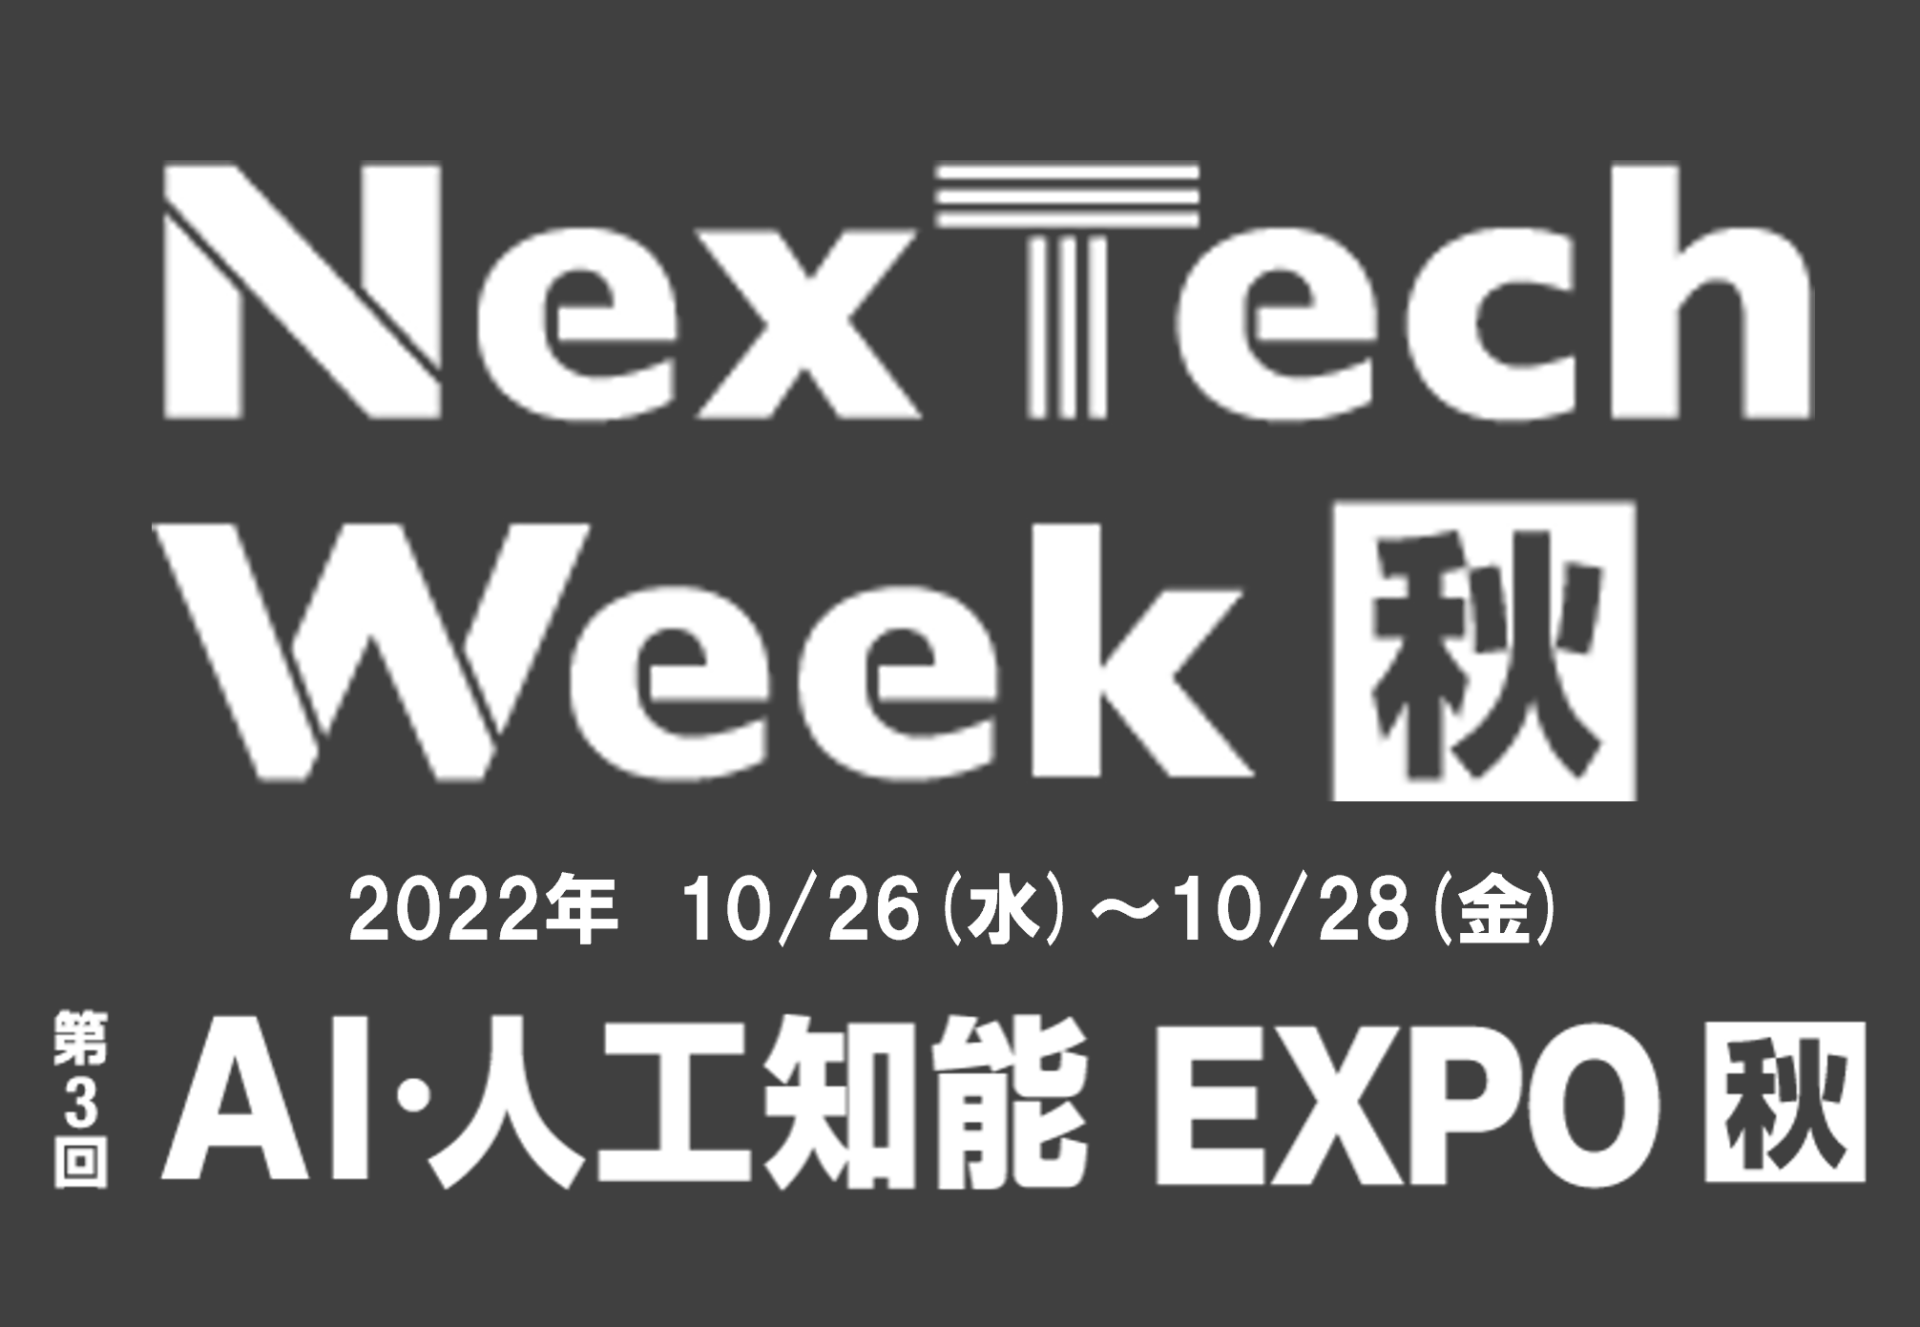 第3回 AI・人工知能EXPO 【秋】出展のお知らせ